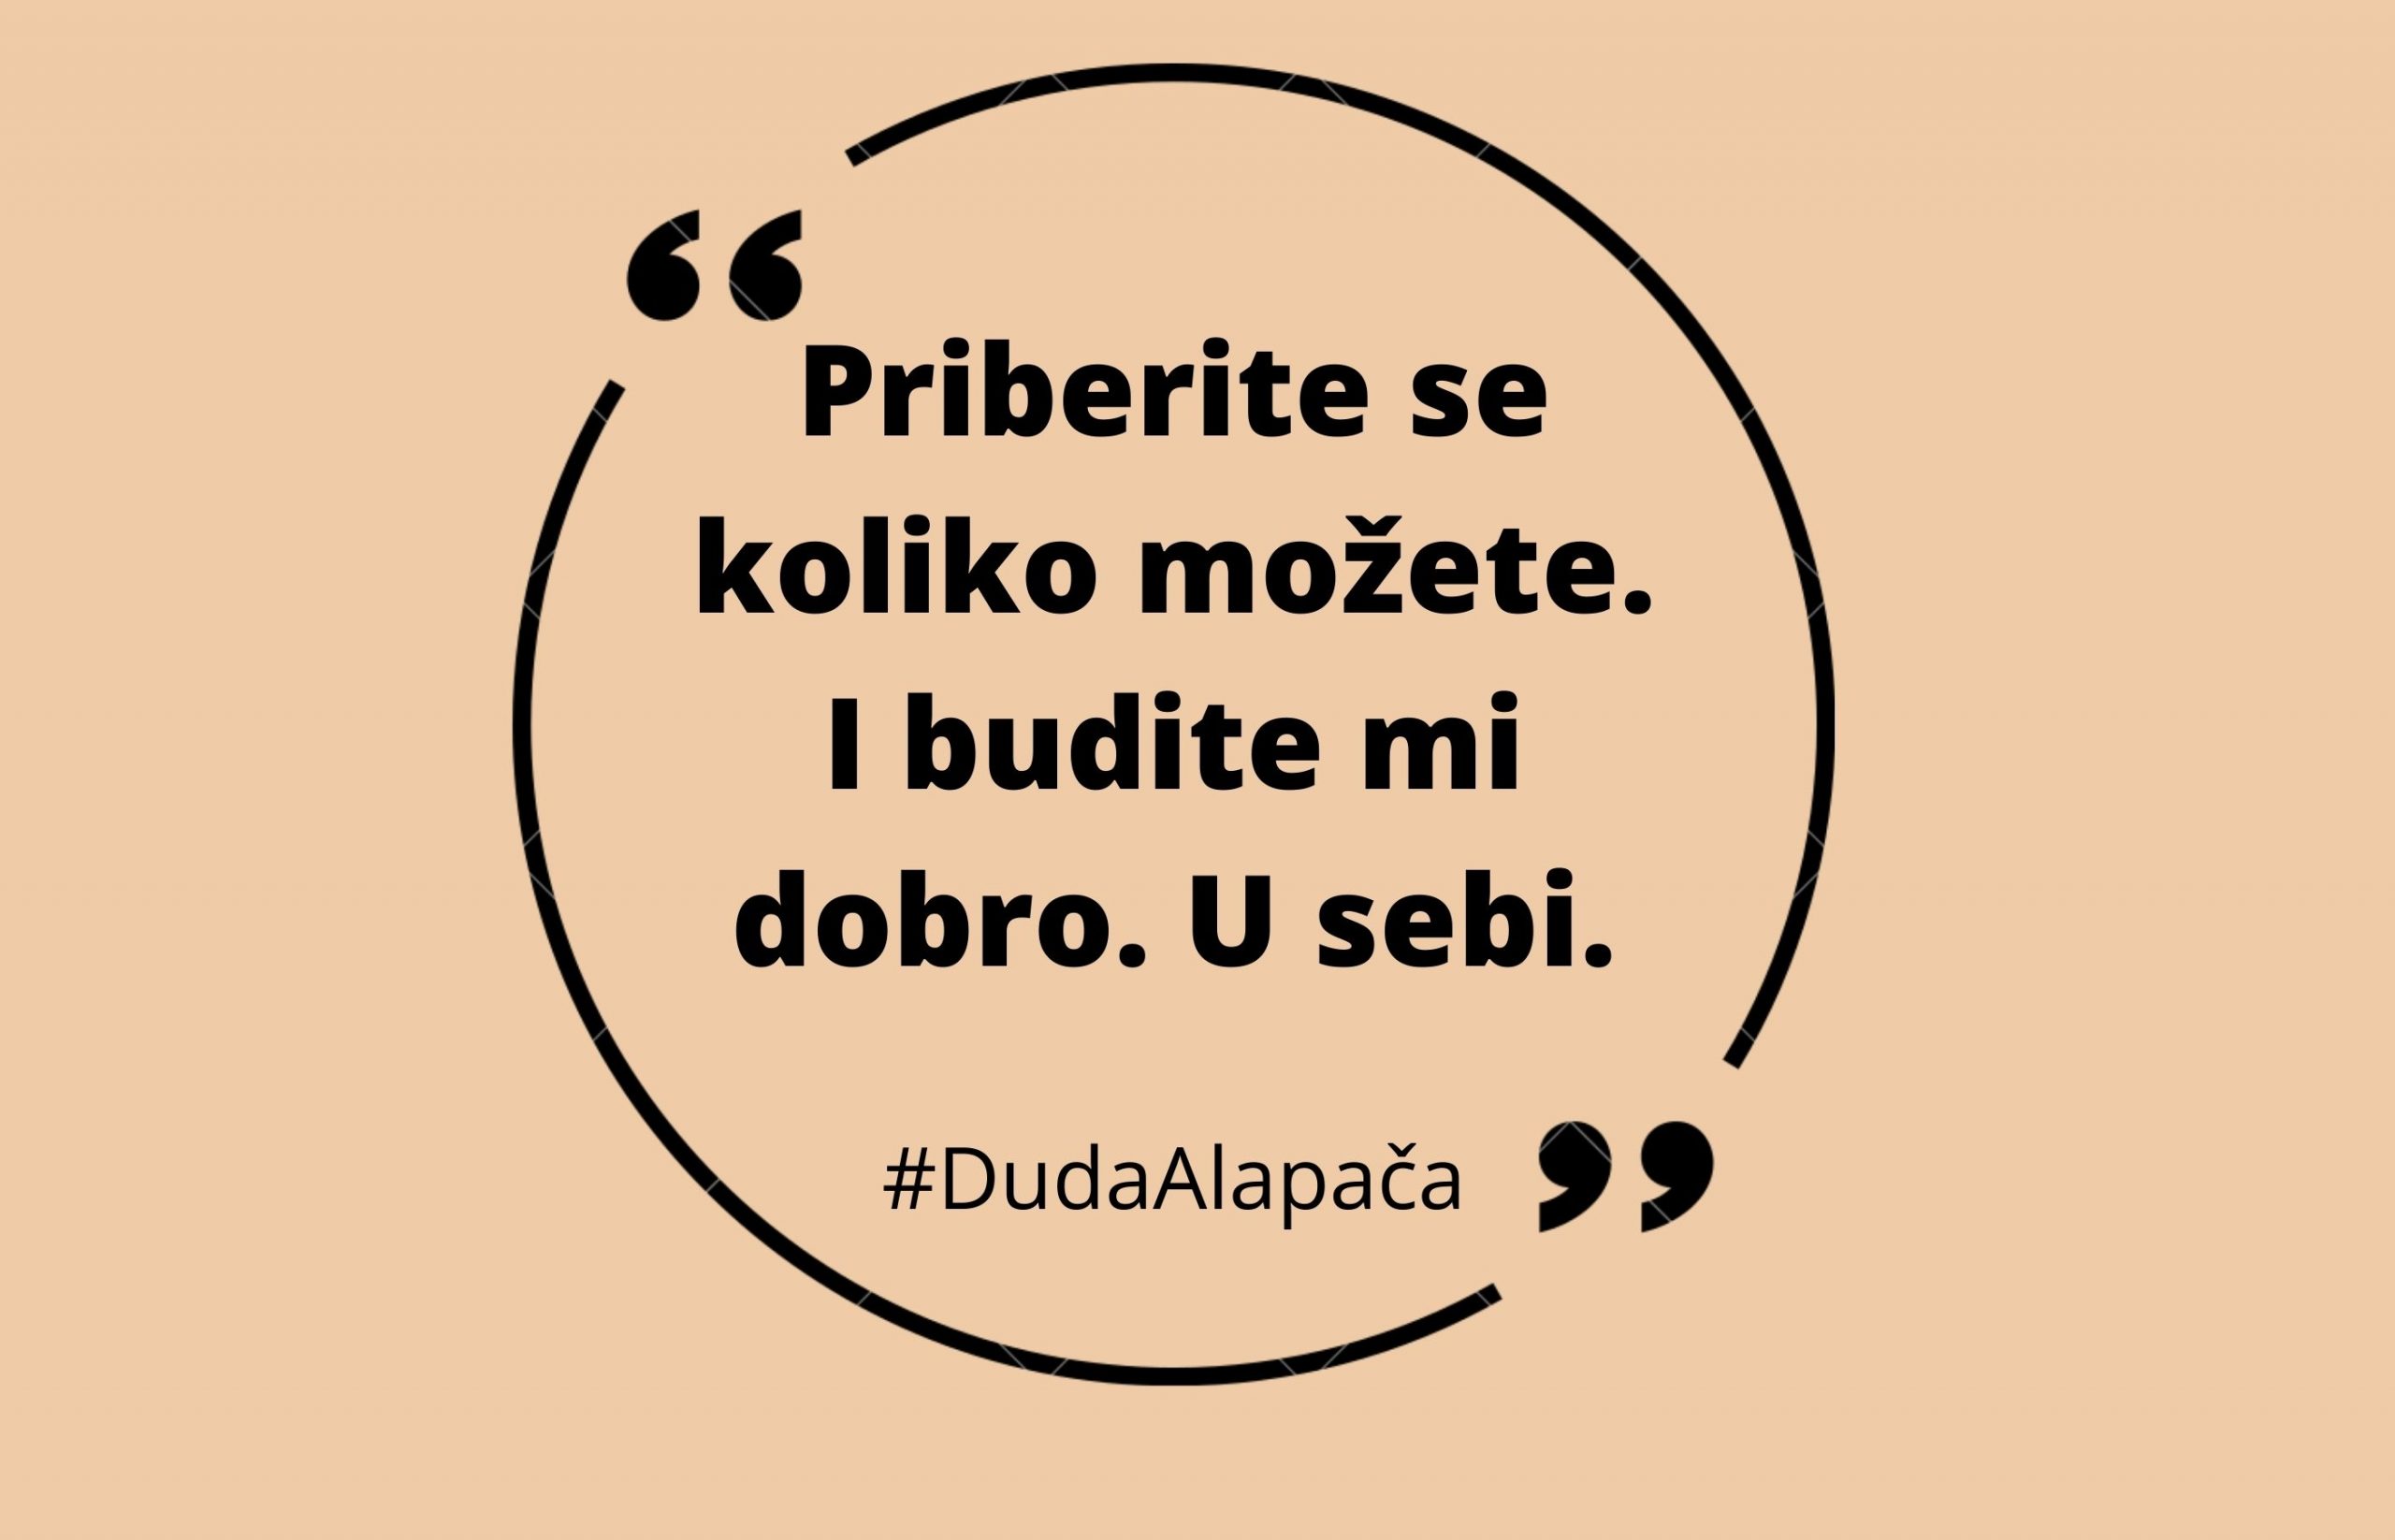 Duda Alapacha: If anyone asks thumbnail